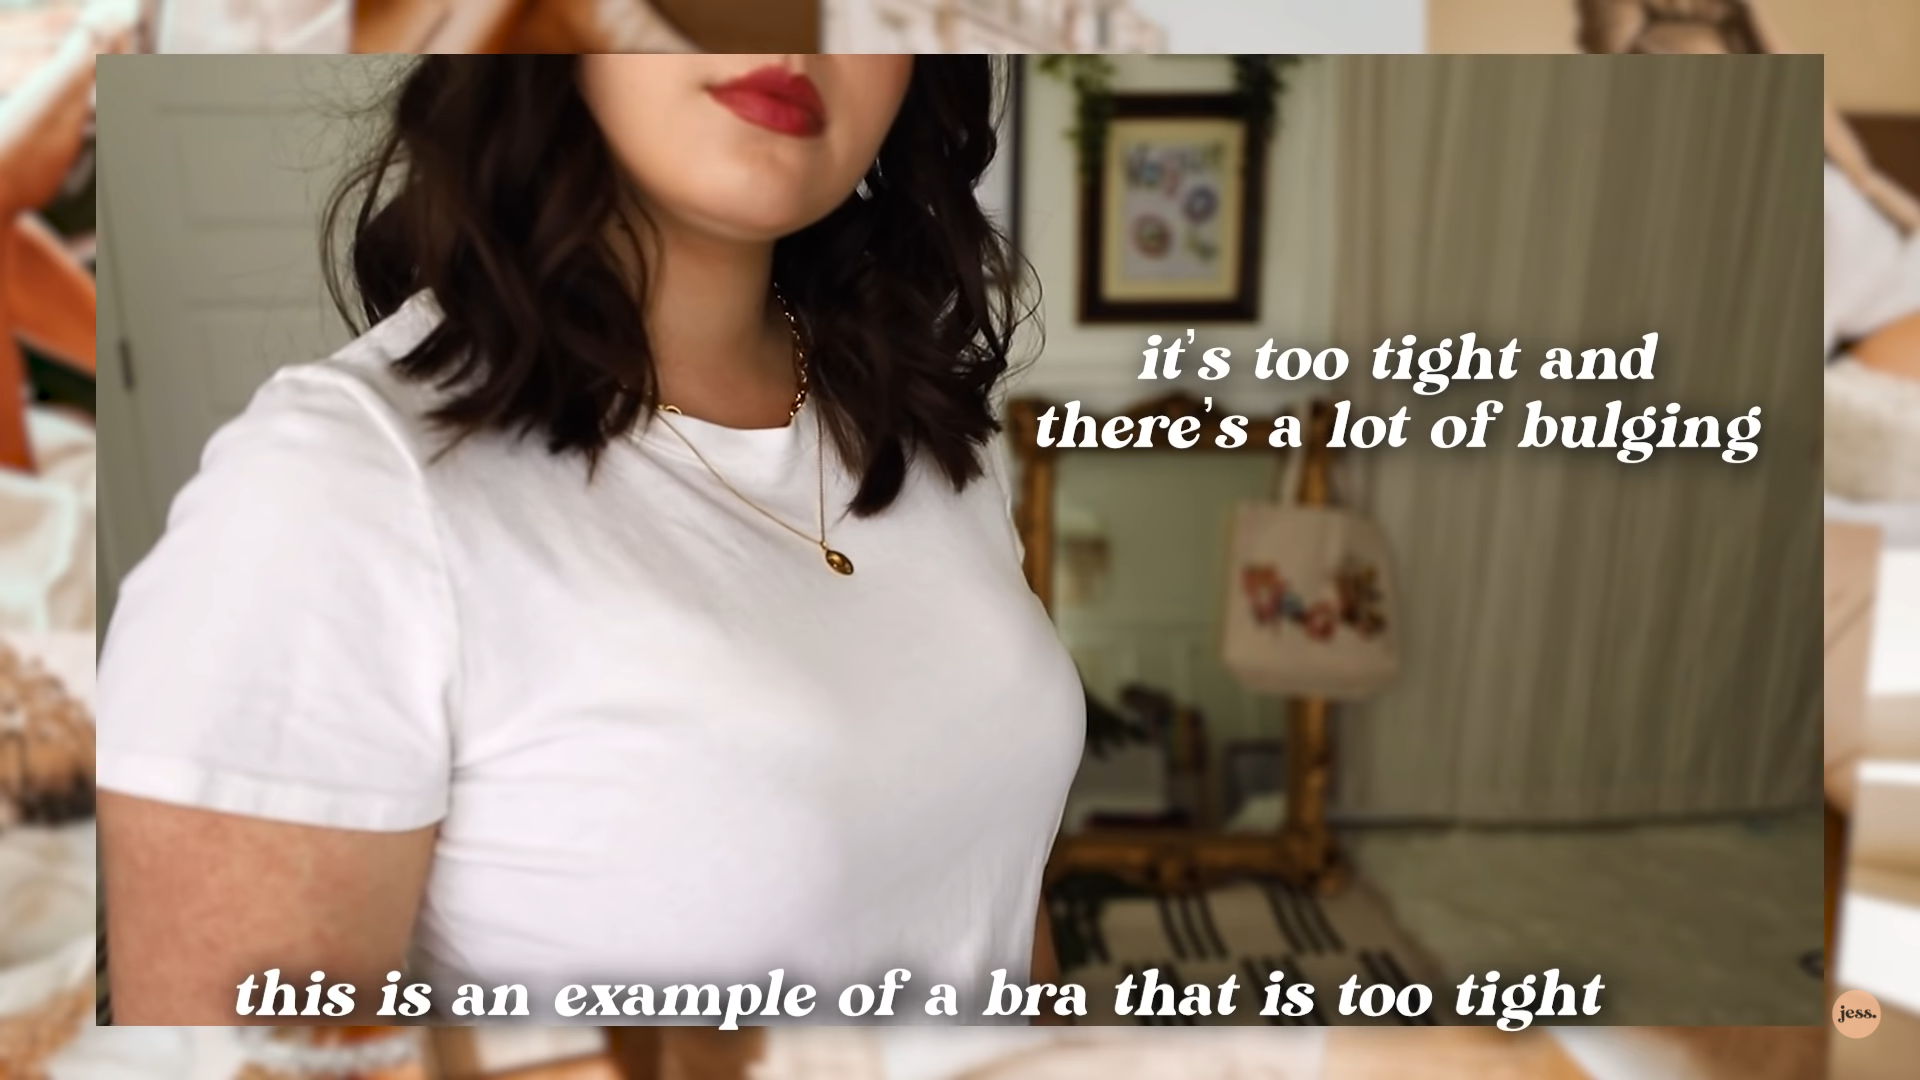 Jessica vo videu poradila, ako si správne vybrať podprsenku.